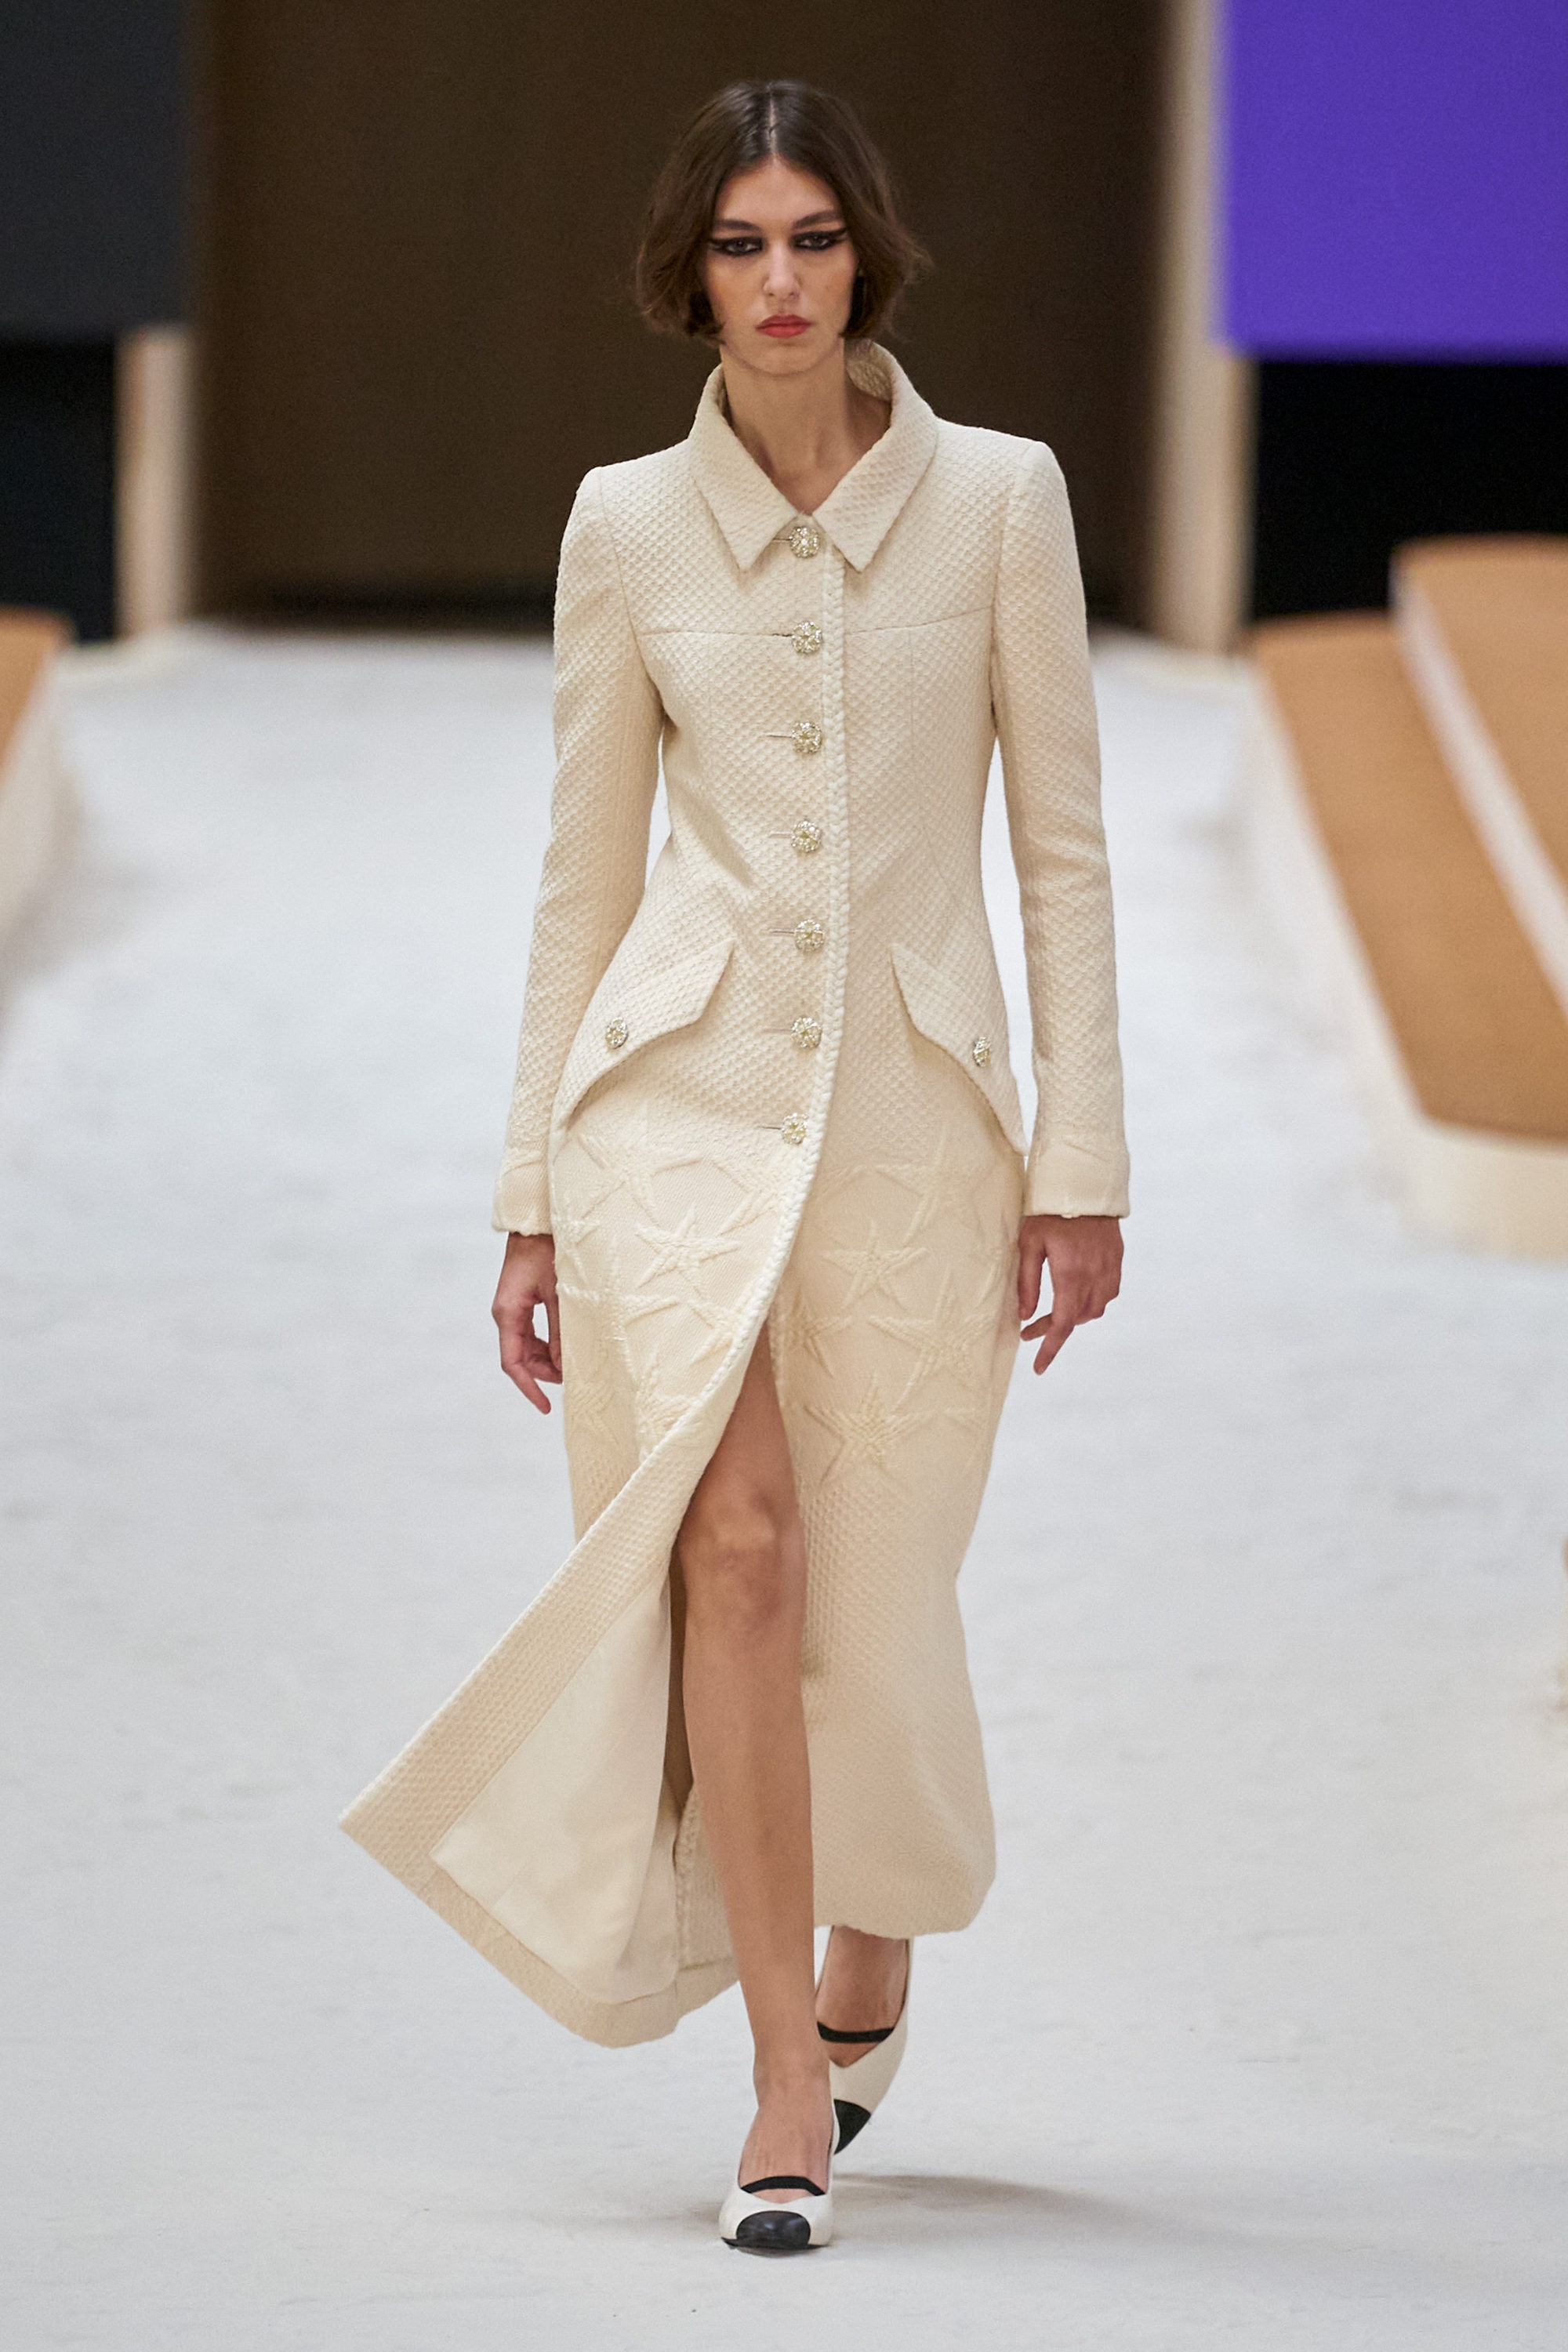 Длинное пальто — один из главных предметов гардероба на Неделе высокой моды. Мы уже нашли идеальные модели на каждый день